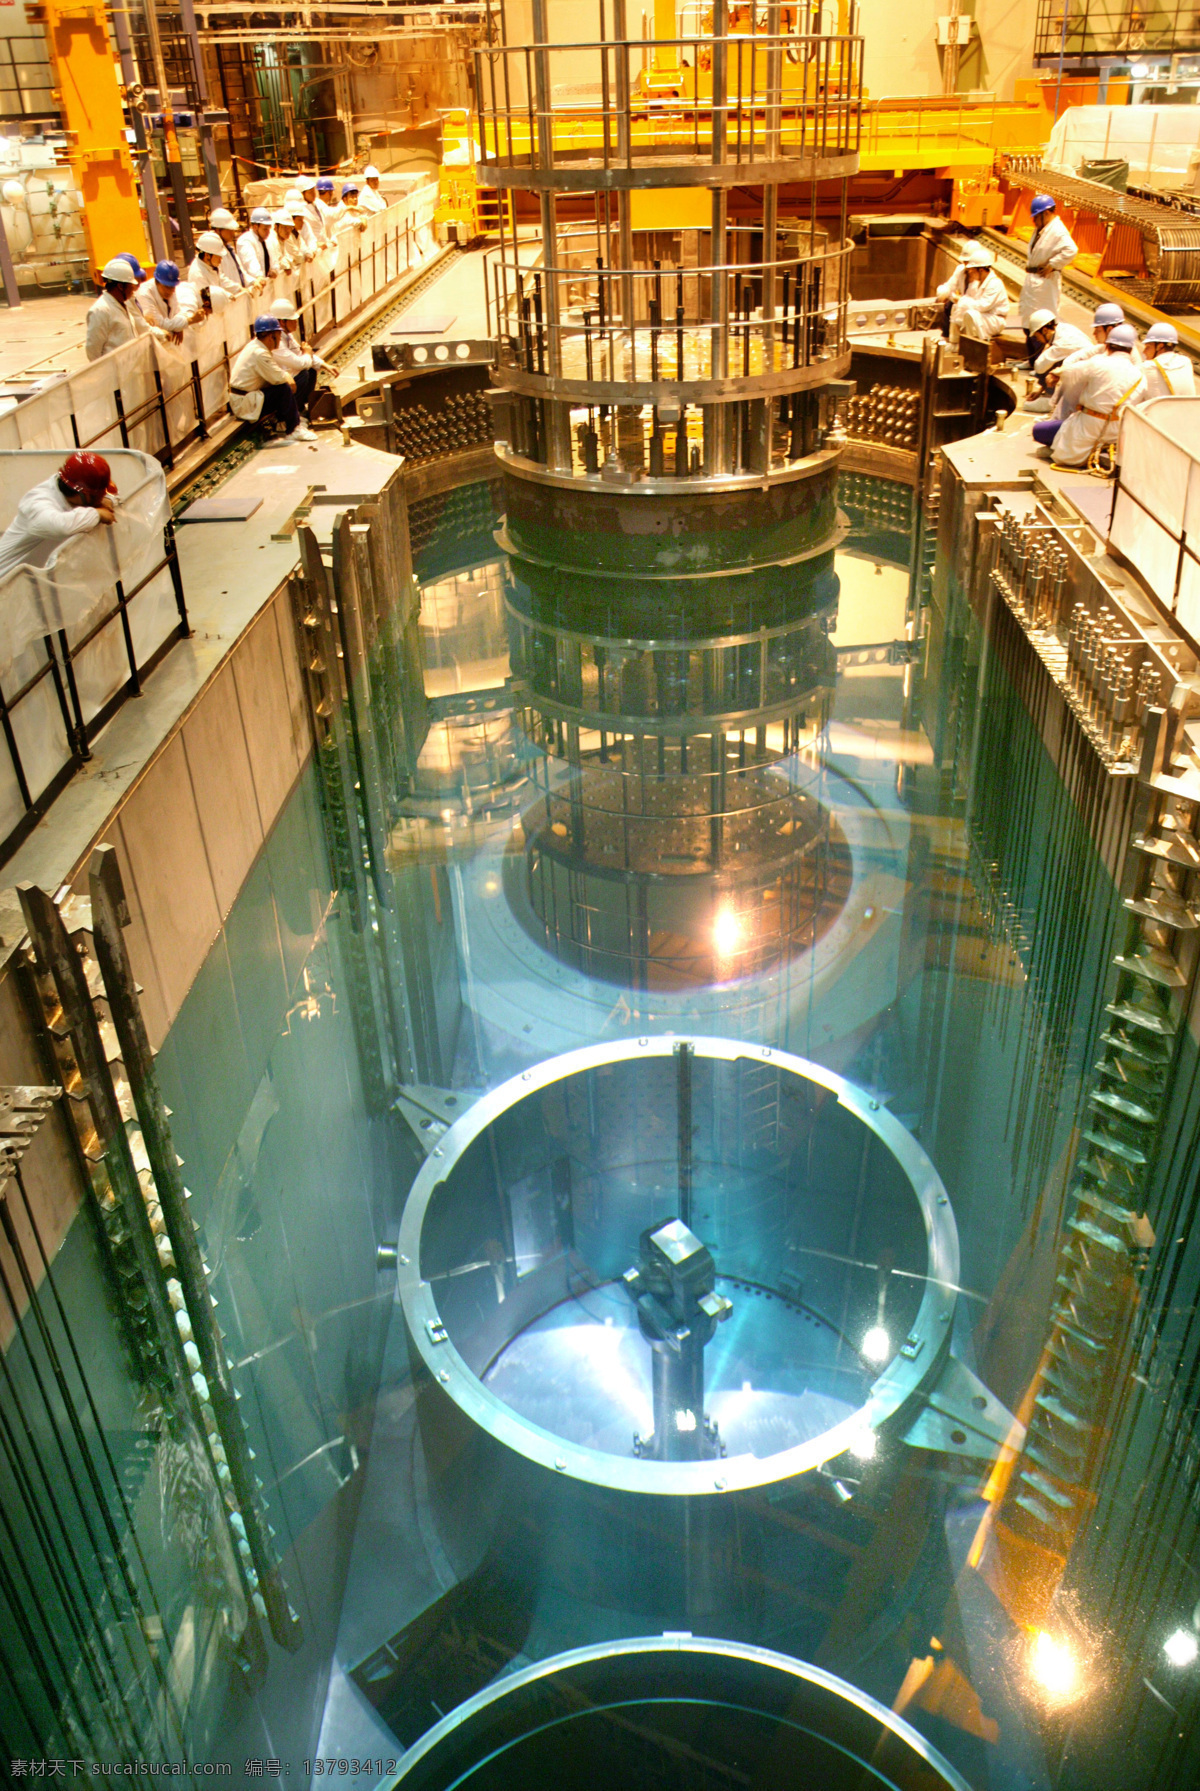 核电站反应堆 田湾核电站 核电 核电站 反应堆 新能源 核能 现代科技 工业生产